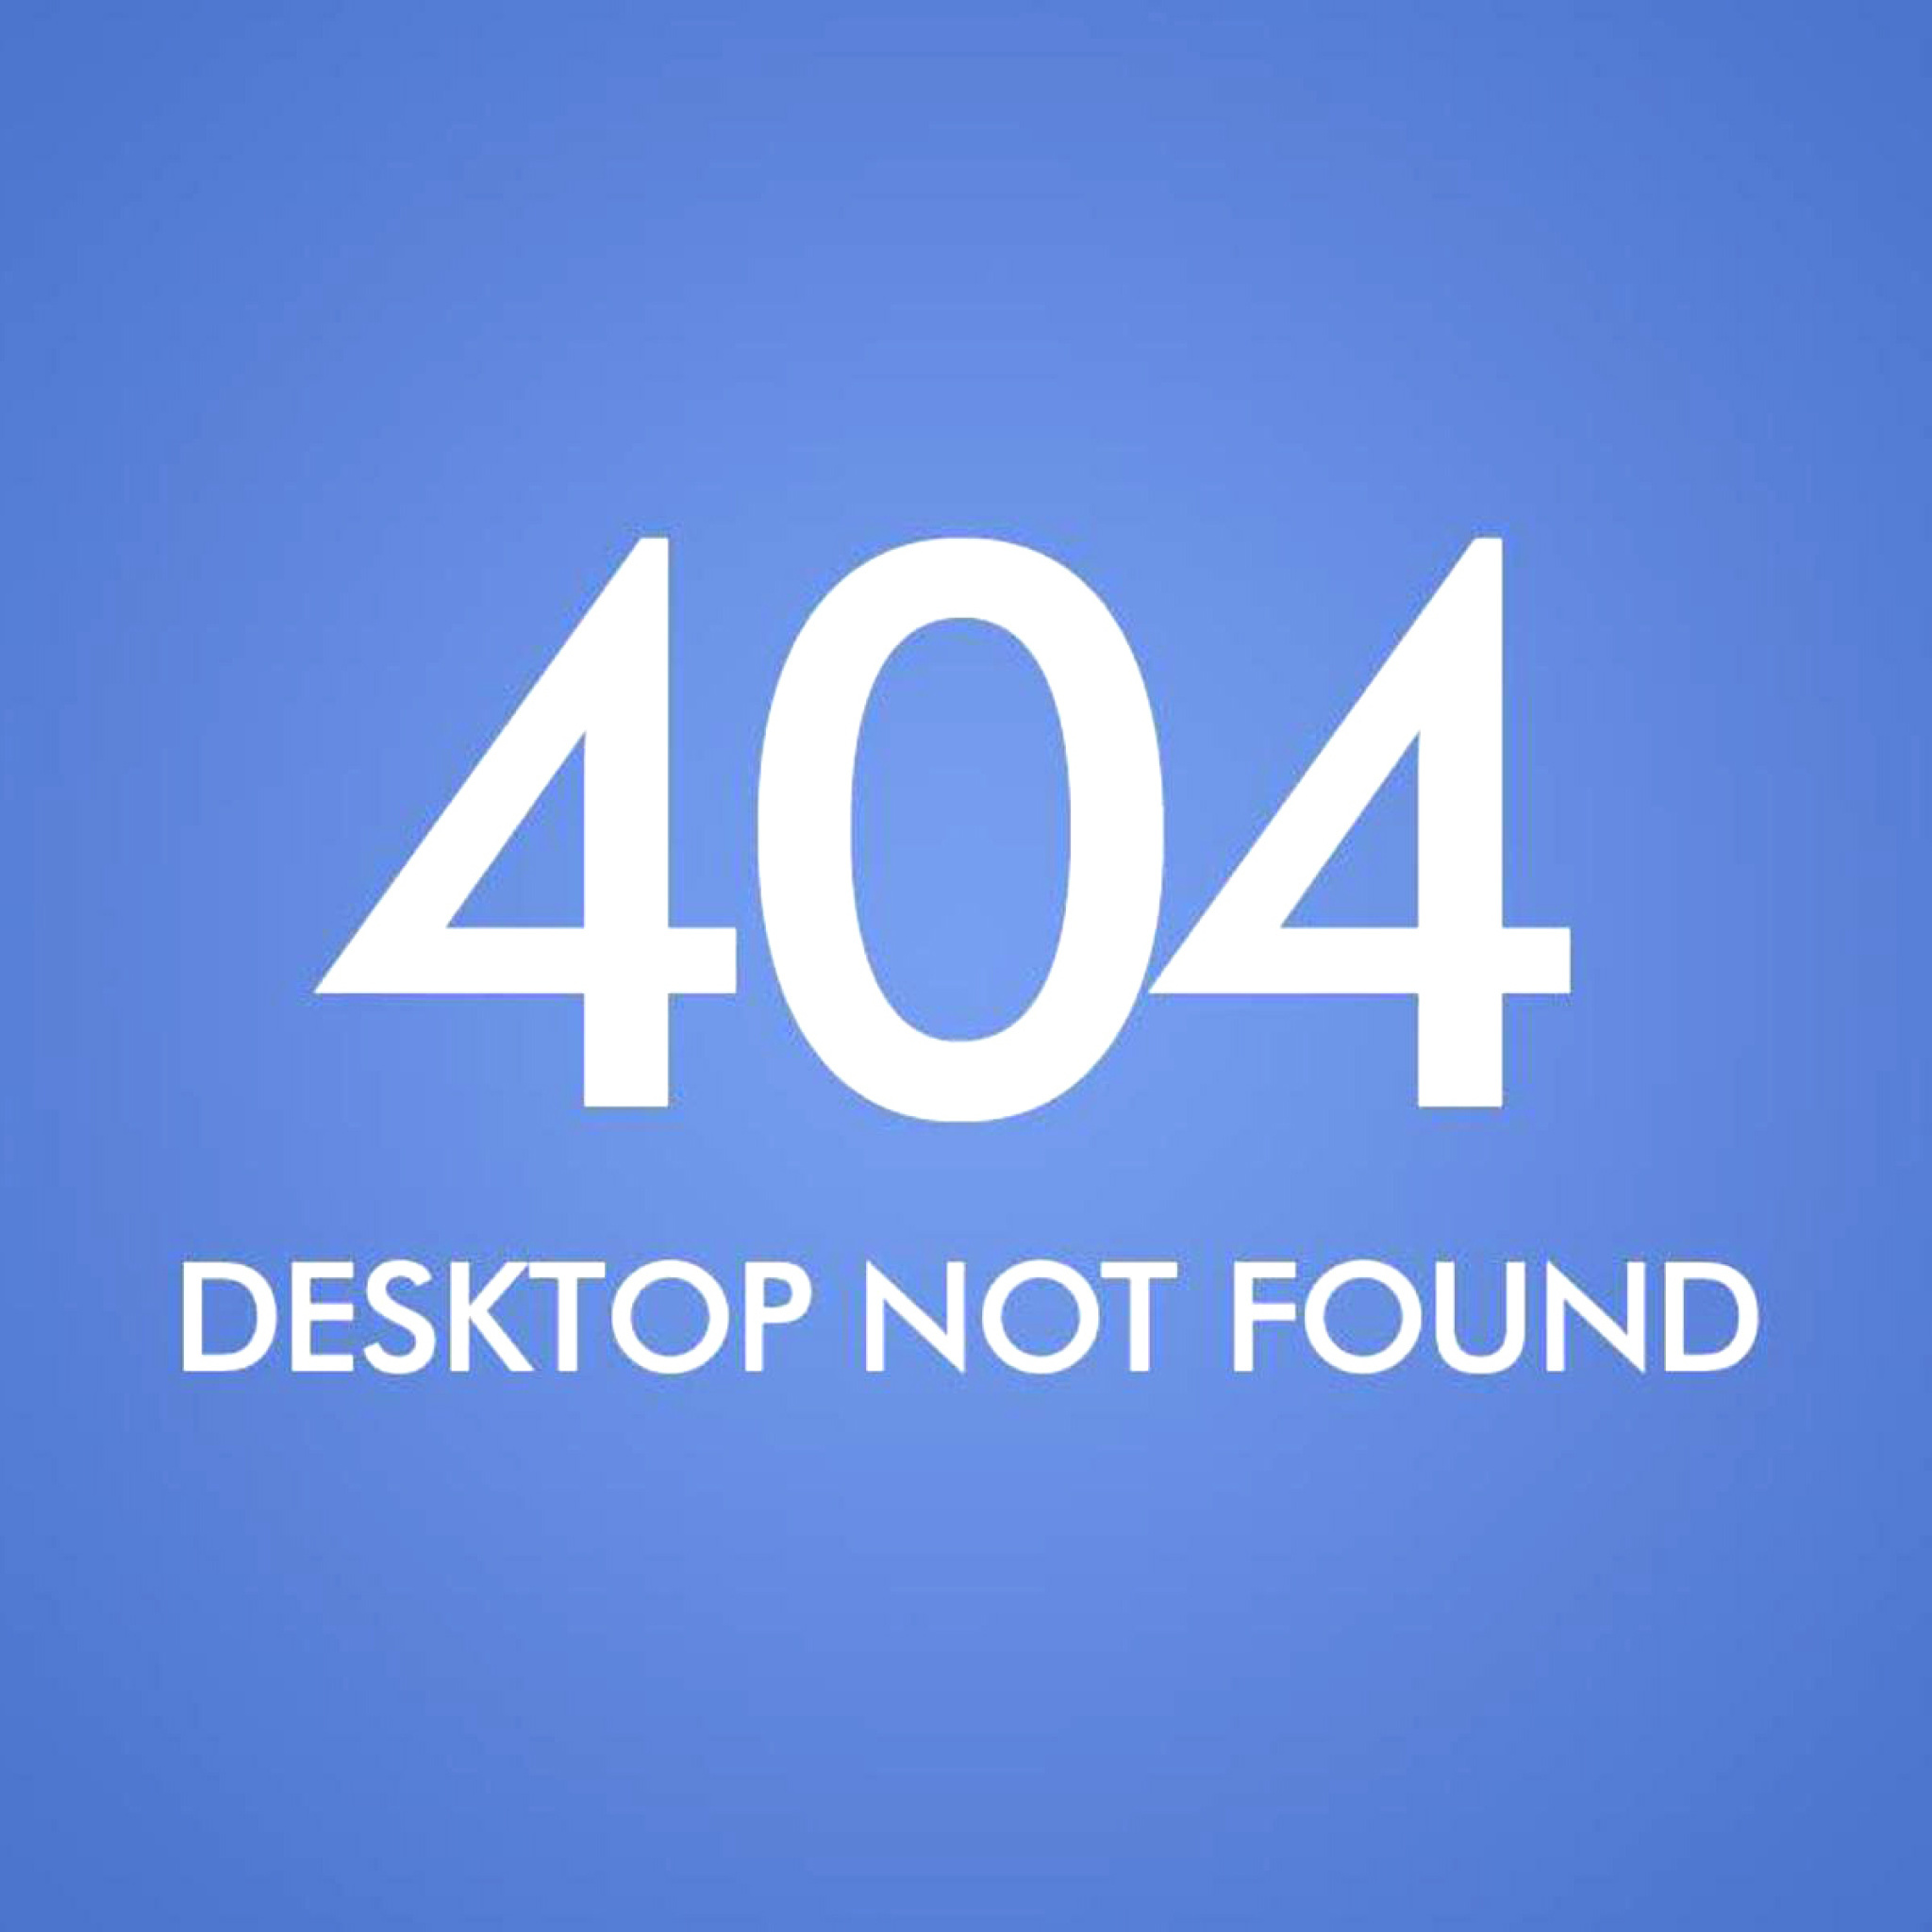 Das 404 Desktop Not Found Wallpaper 2048x2048